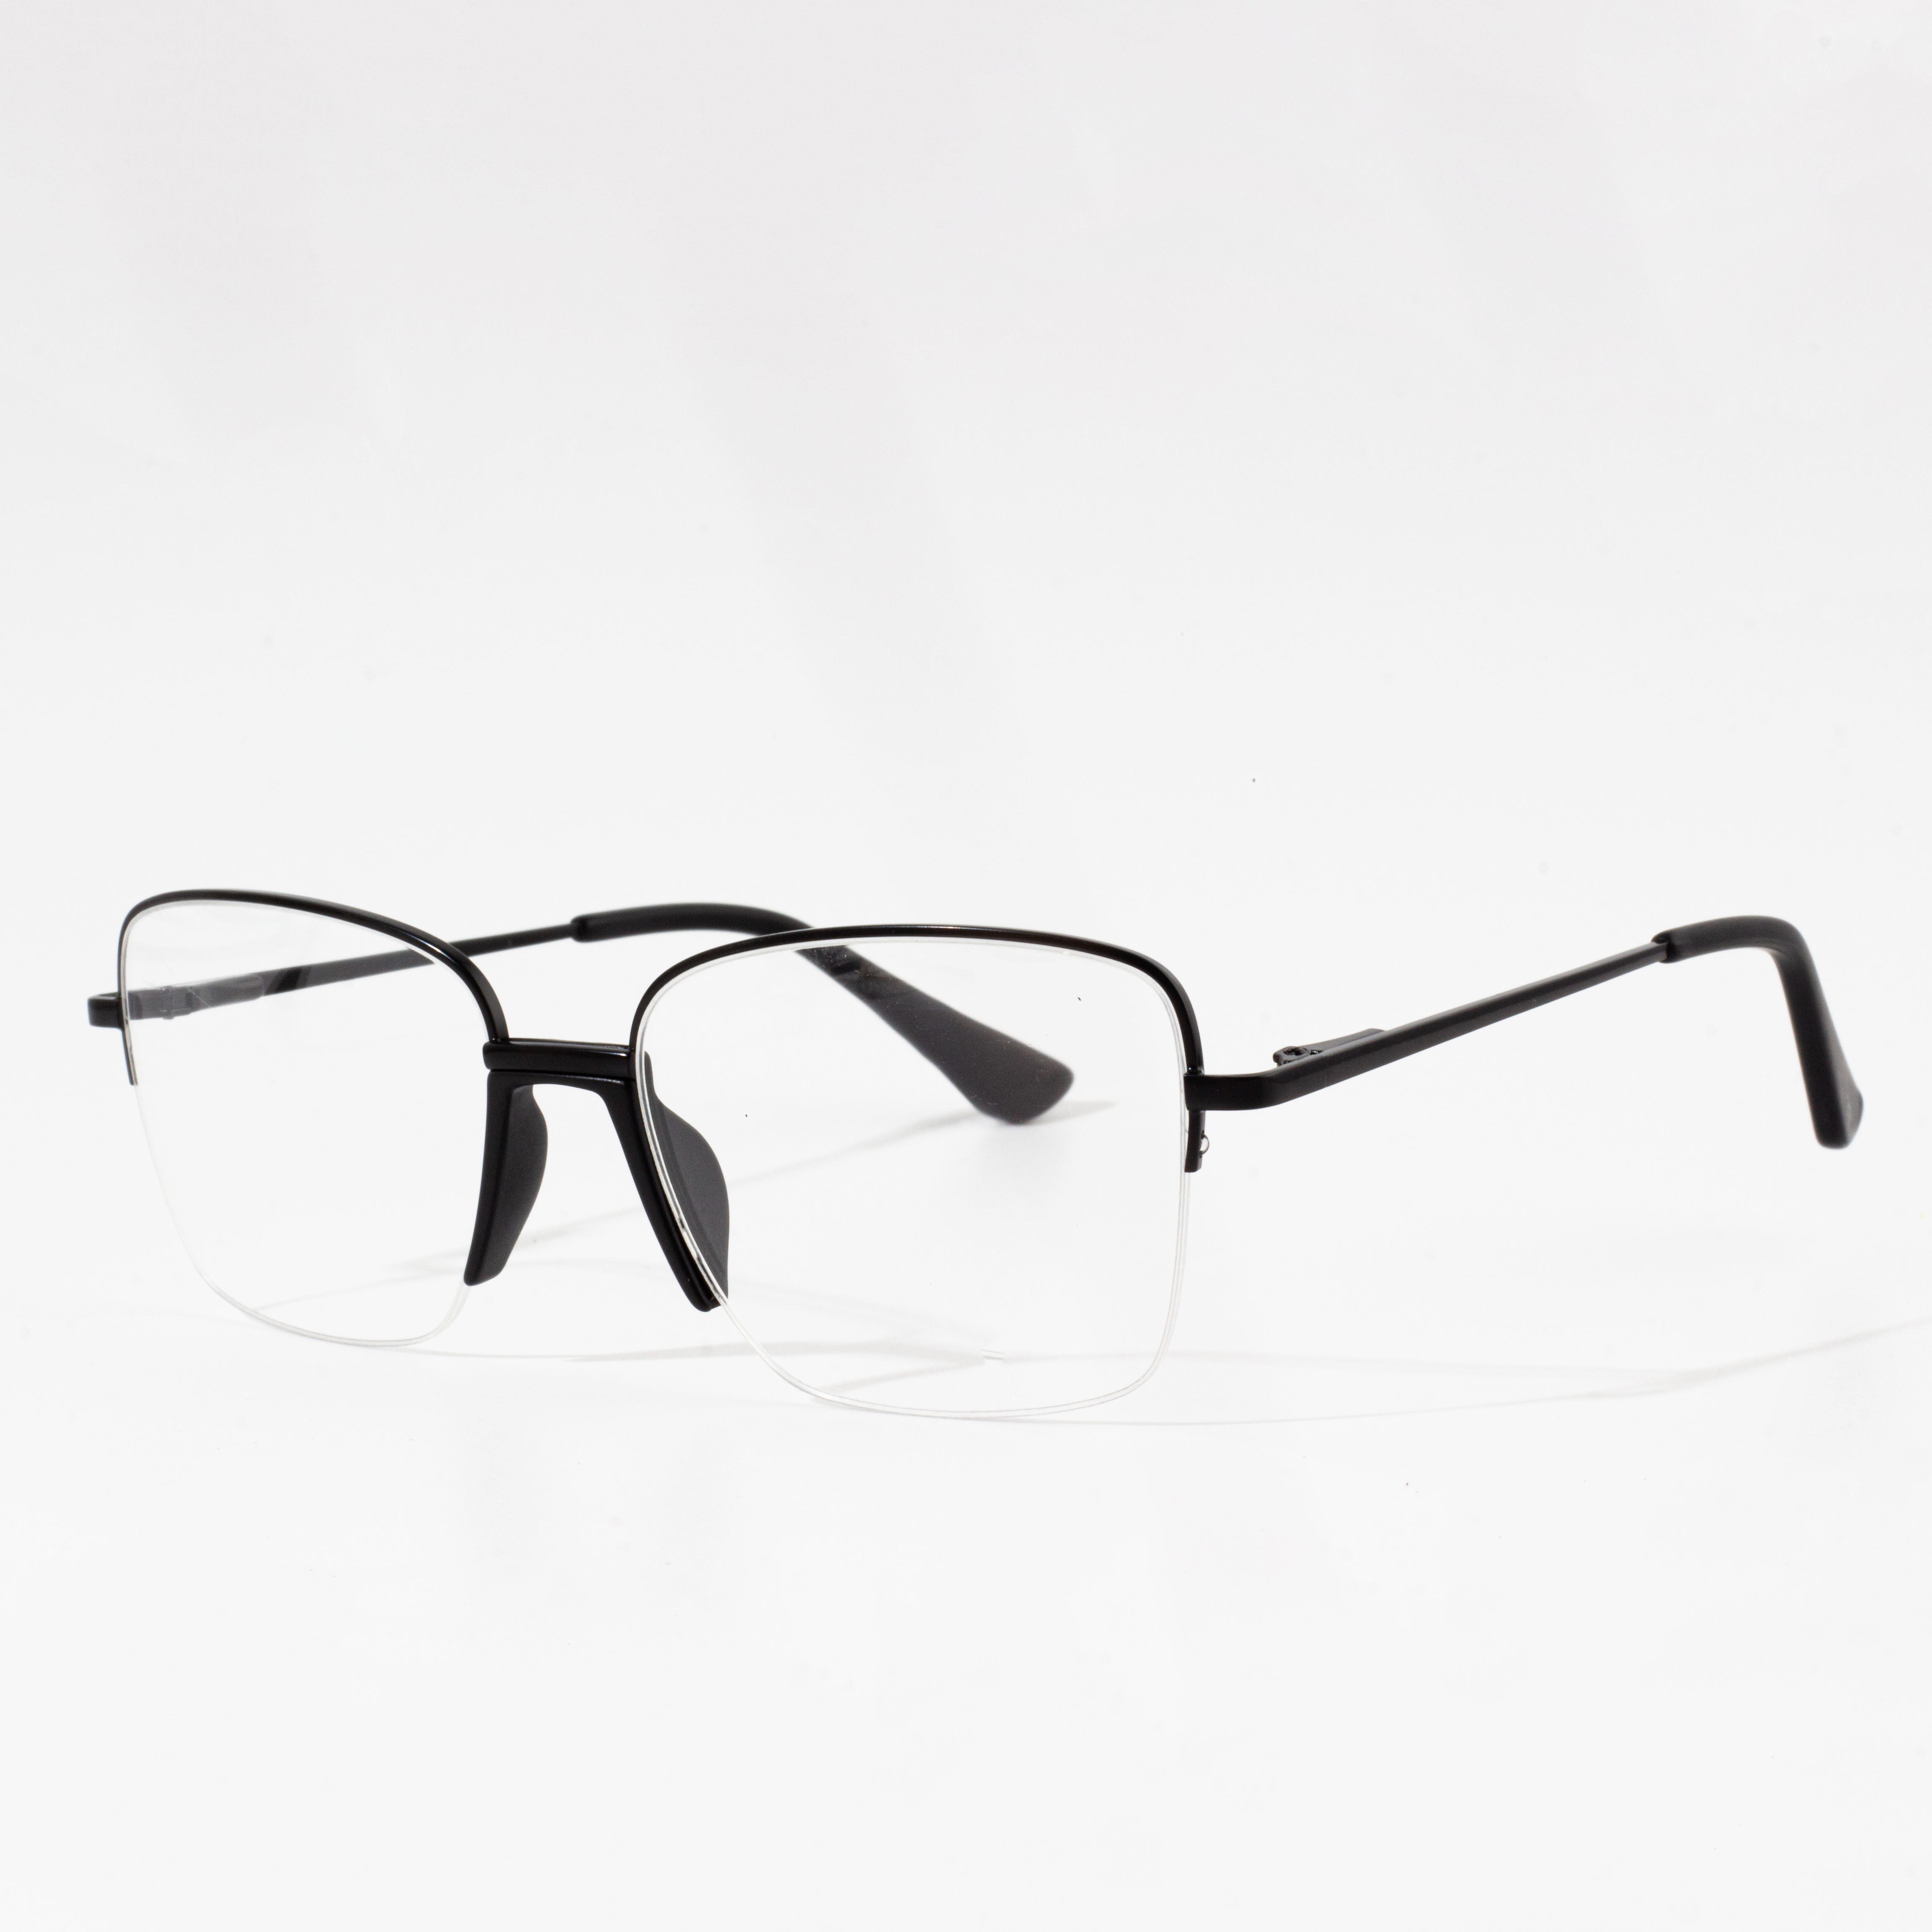 men's eyeglasses frames